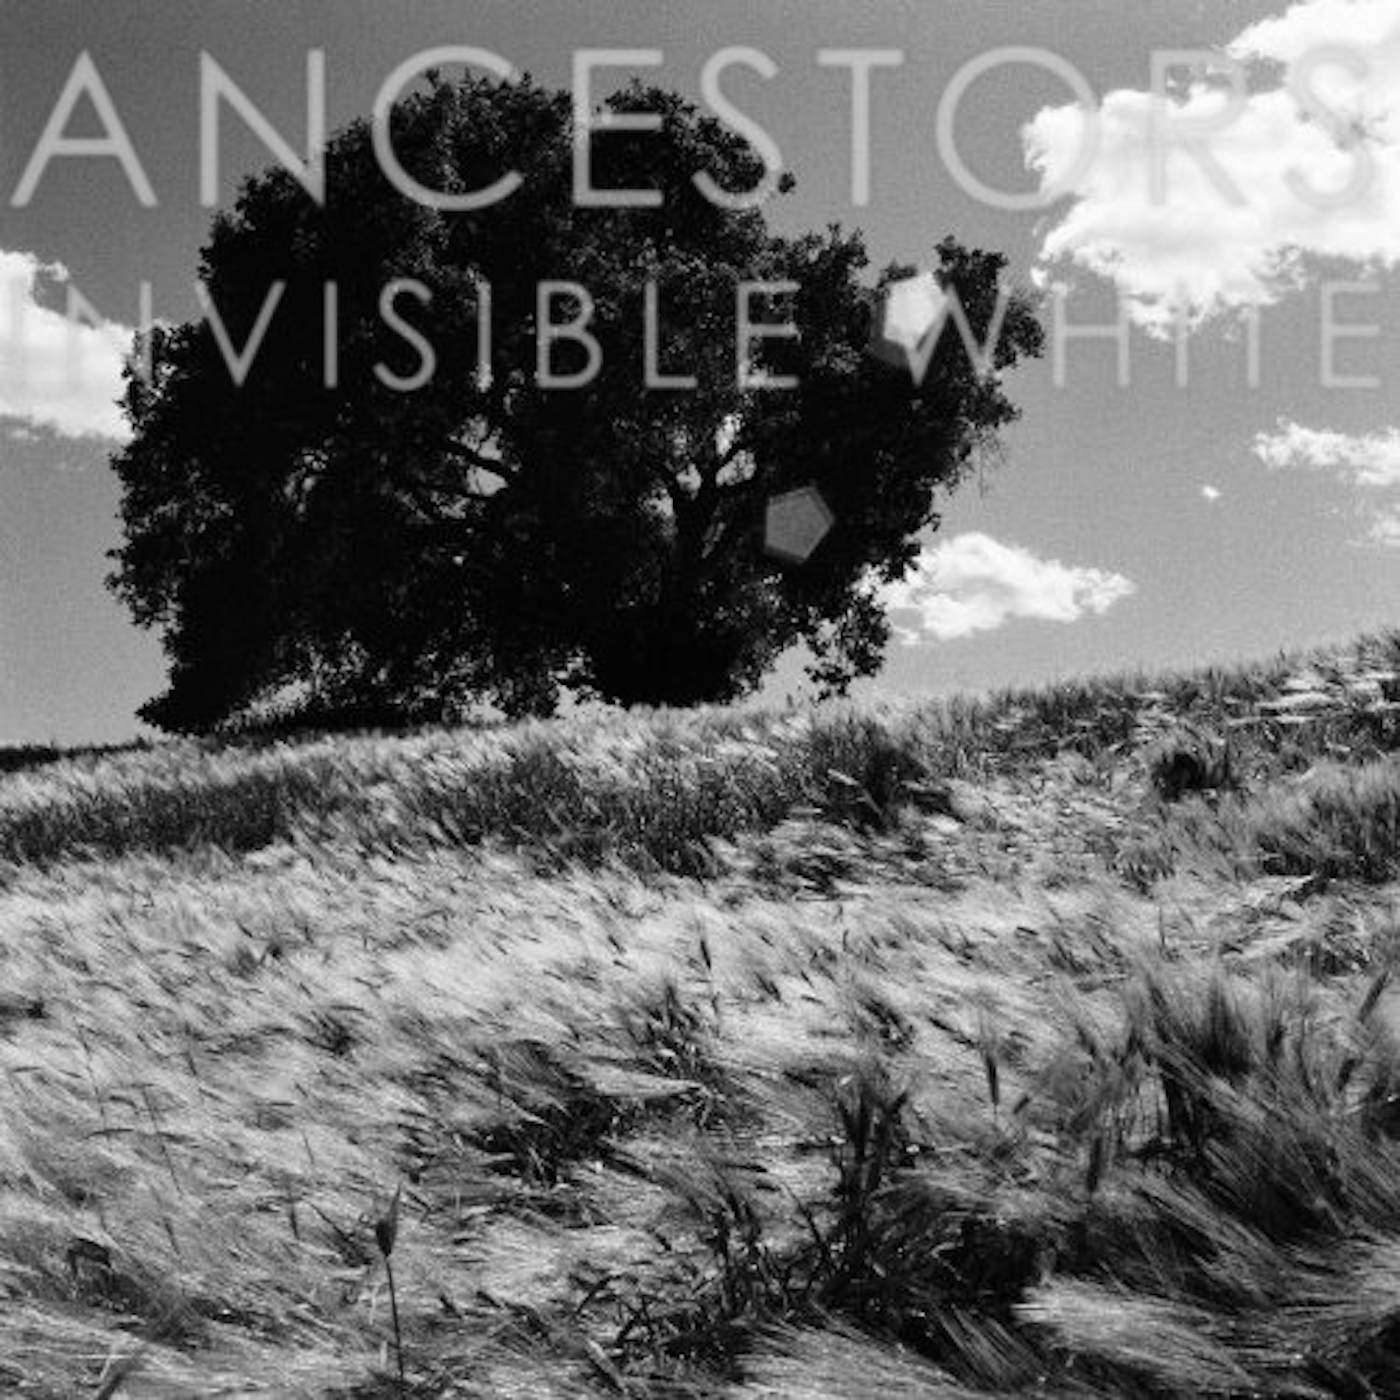 Ancestors Invisible White Vinyl Record